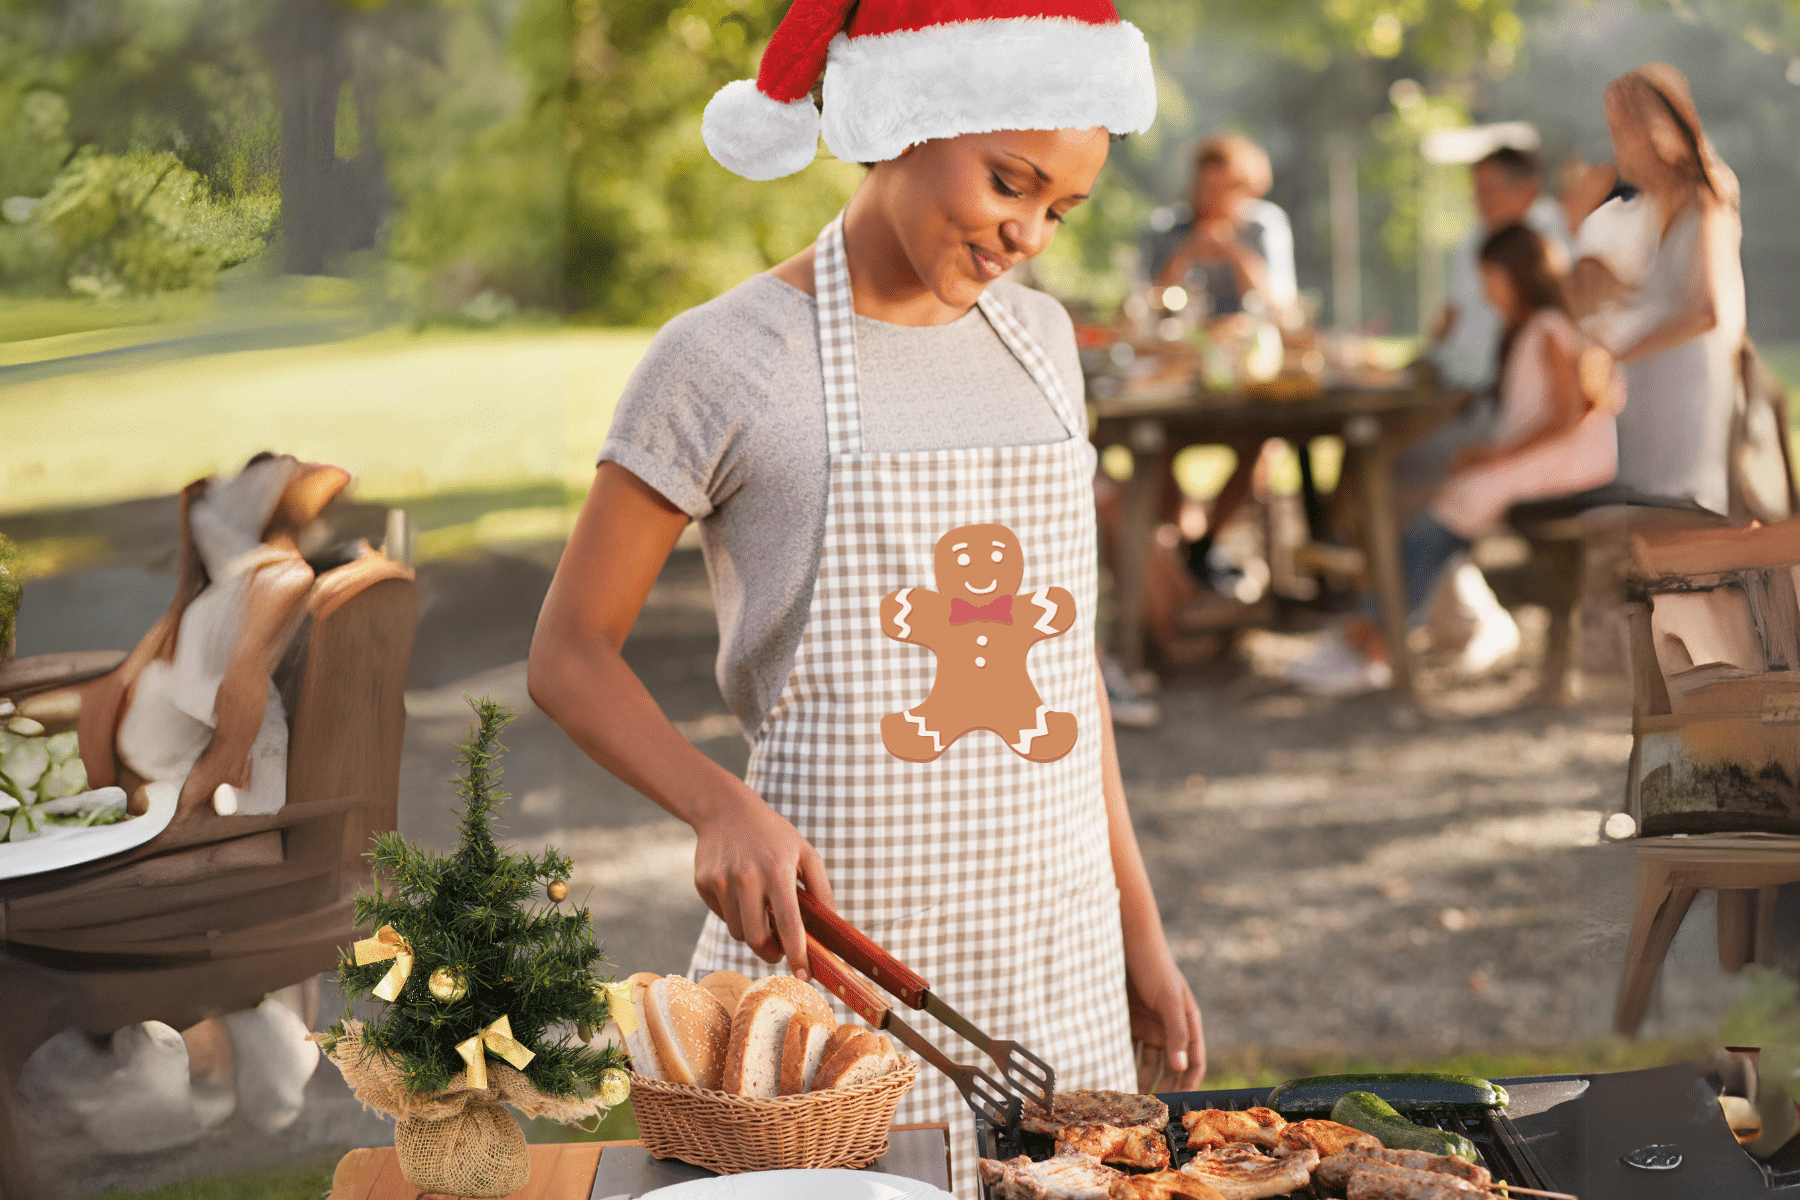 Christmas dinner ideas on the grill with pork tenderloin